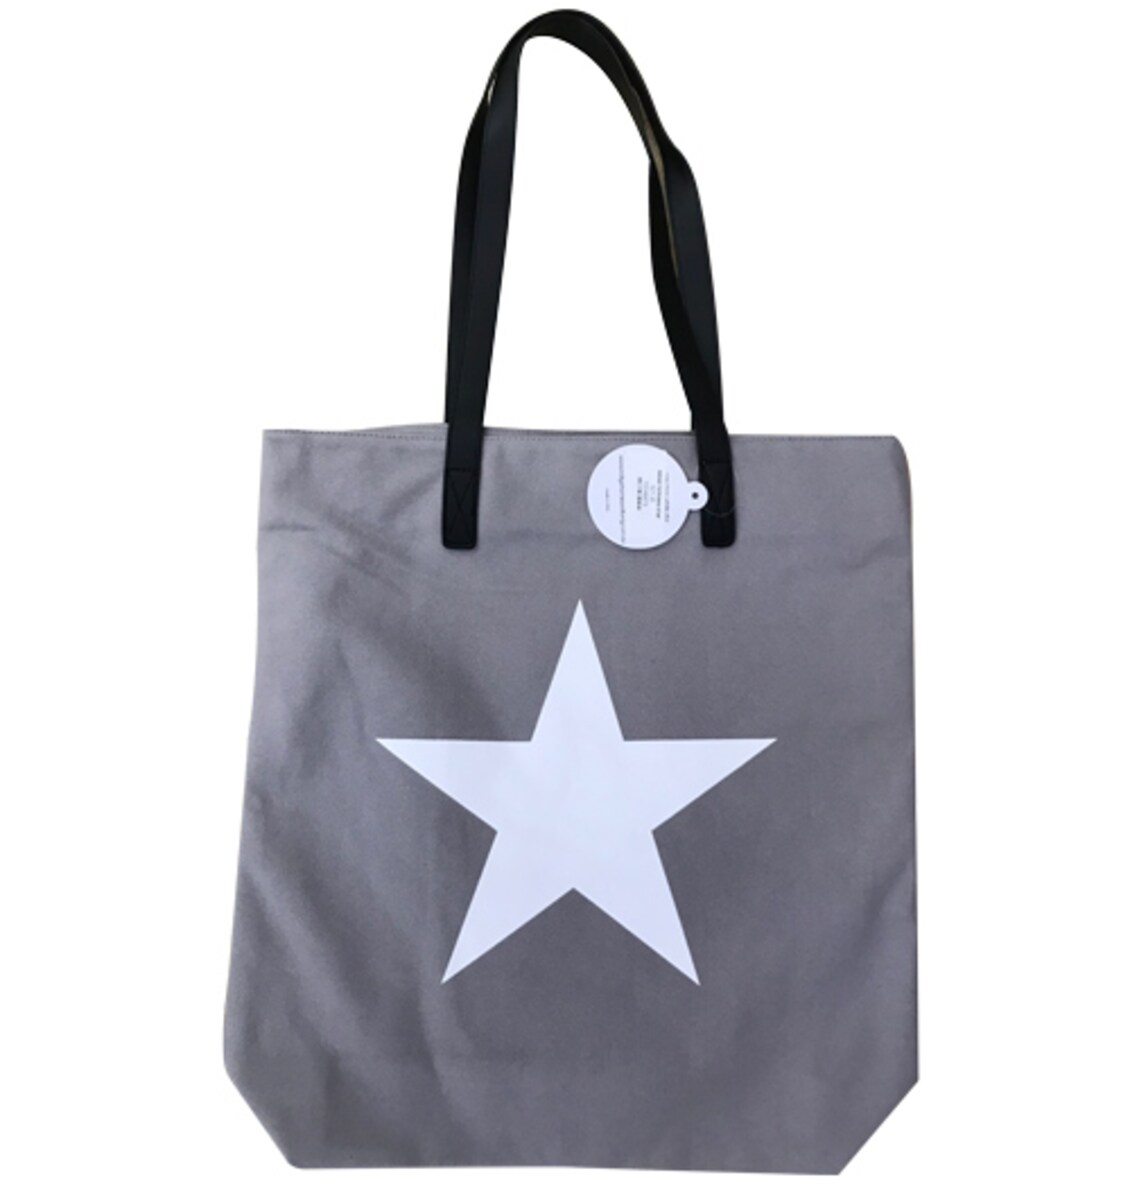 Indigo Home & Living Tote Bag with Star Grey